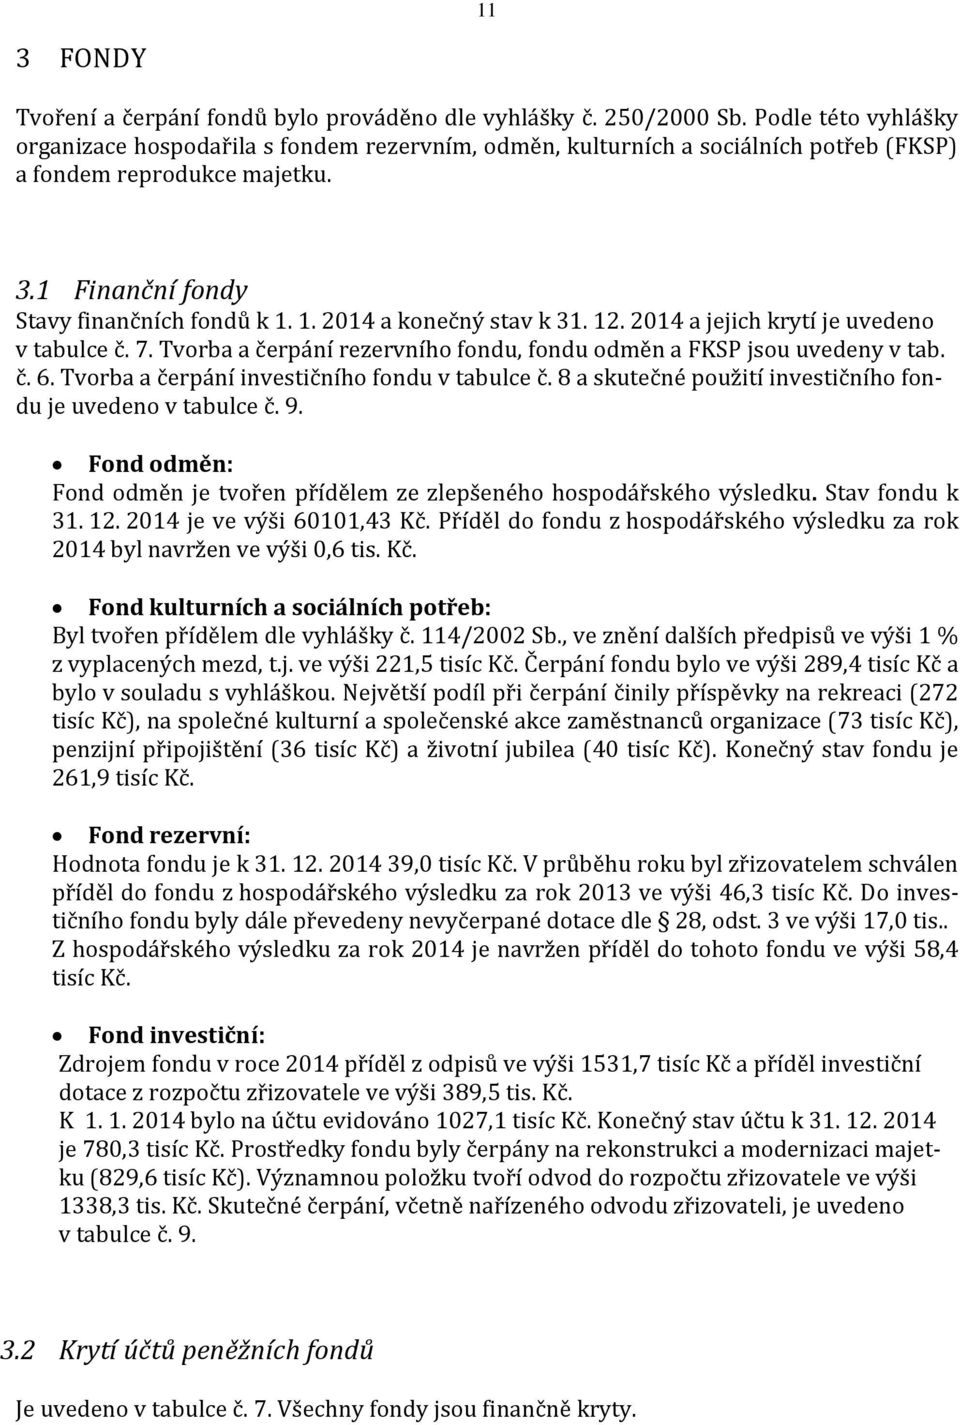 1. 2014 a konečný stav k 31. 12. 2014 a jejich krytí je uvedeno v tabulce č. 7. Tvorba a čerpání rezervního fondu, fondu odměn a FKSP jsou uvedeny v tab. č. 6.